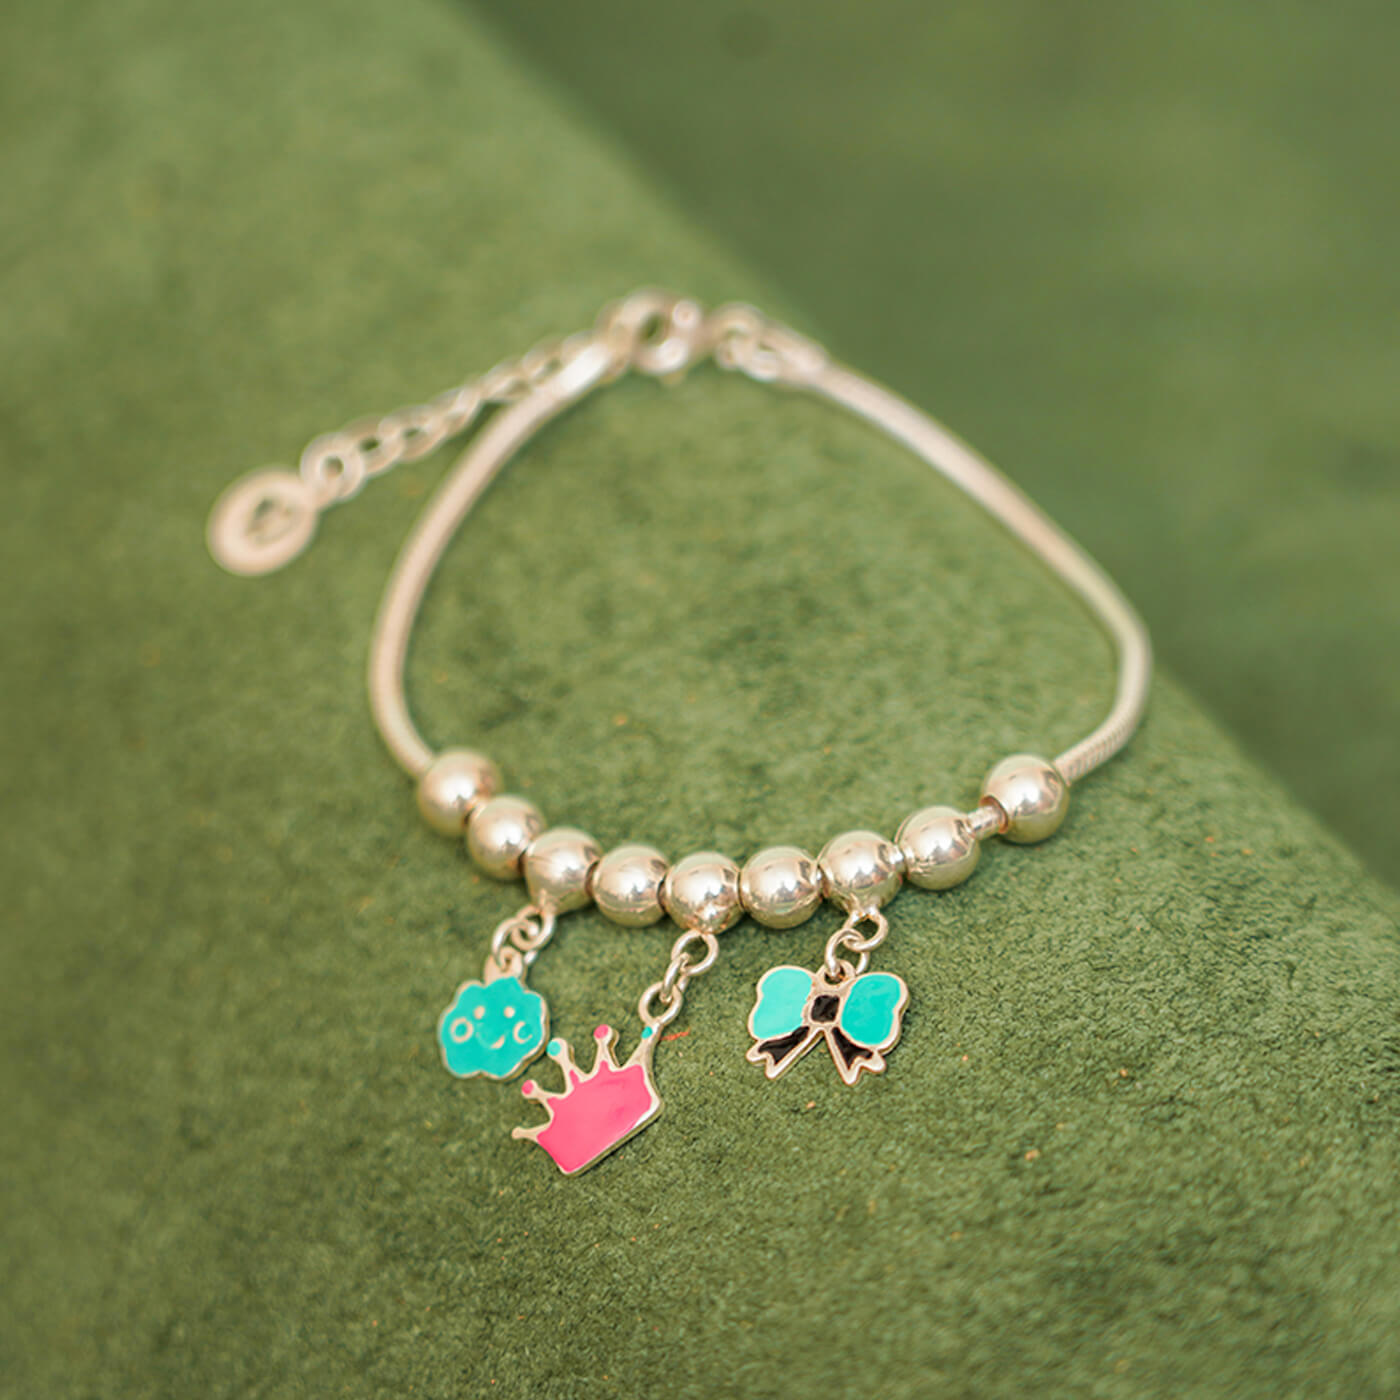 Pandora Luxury Crystal Flower Charm Bracelets with India | Ubuy